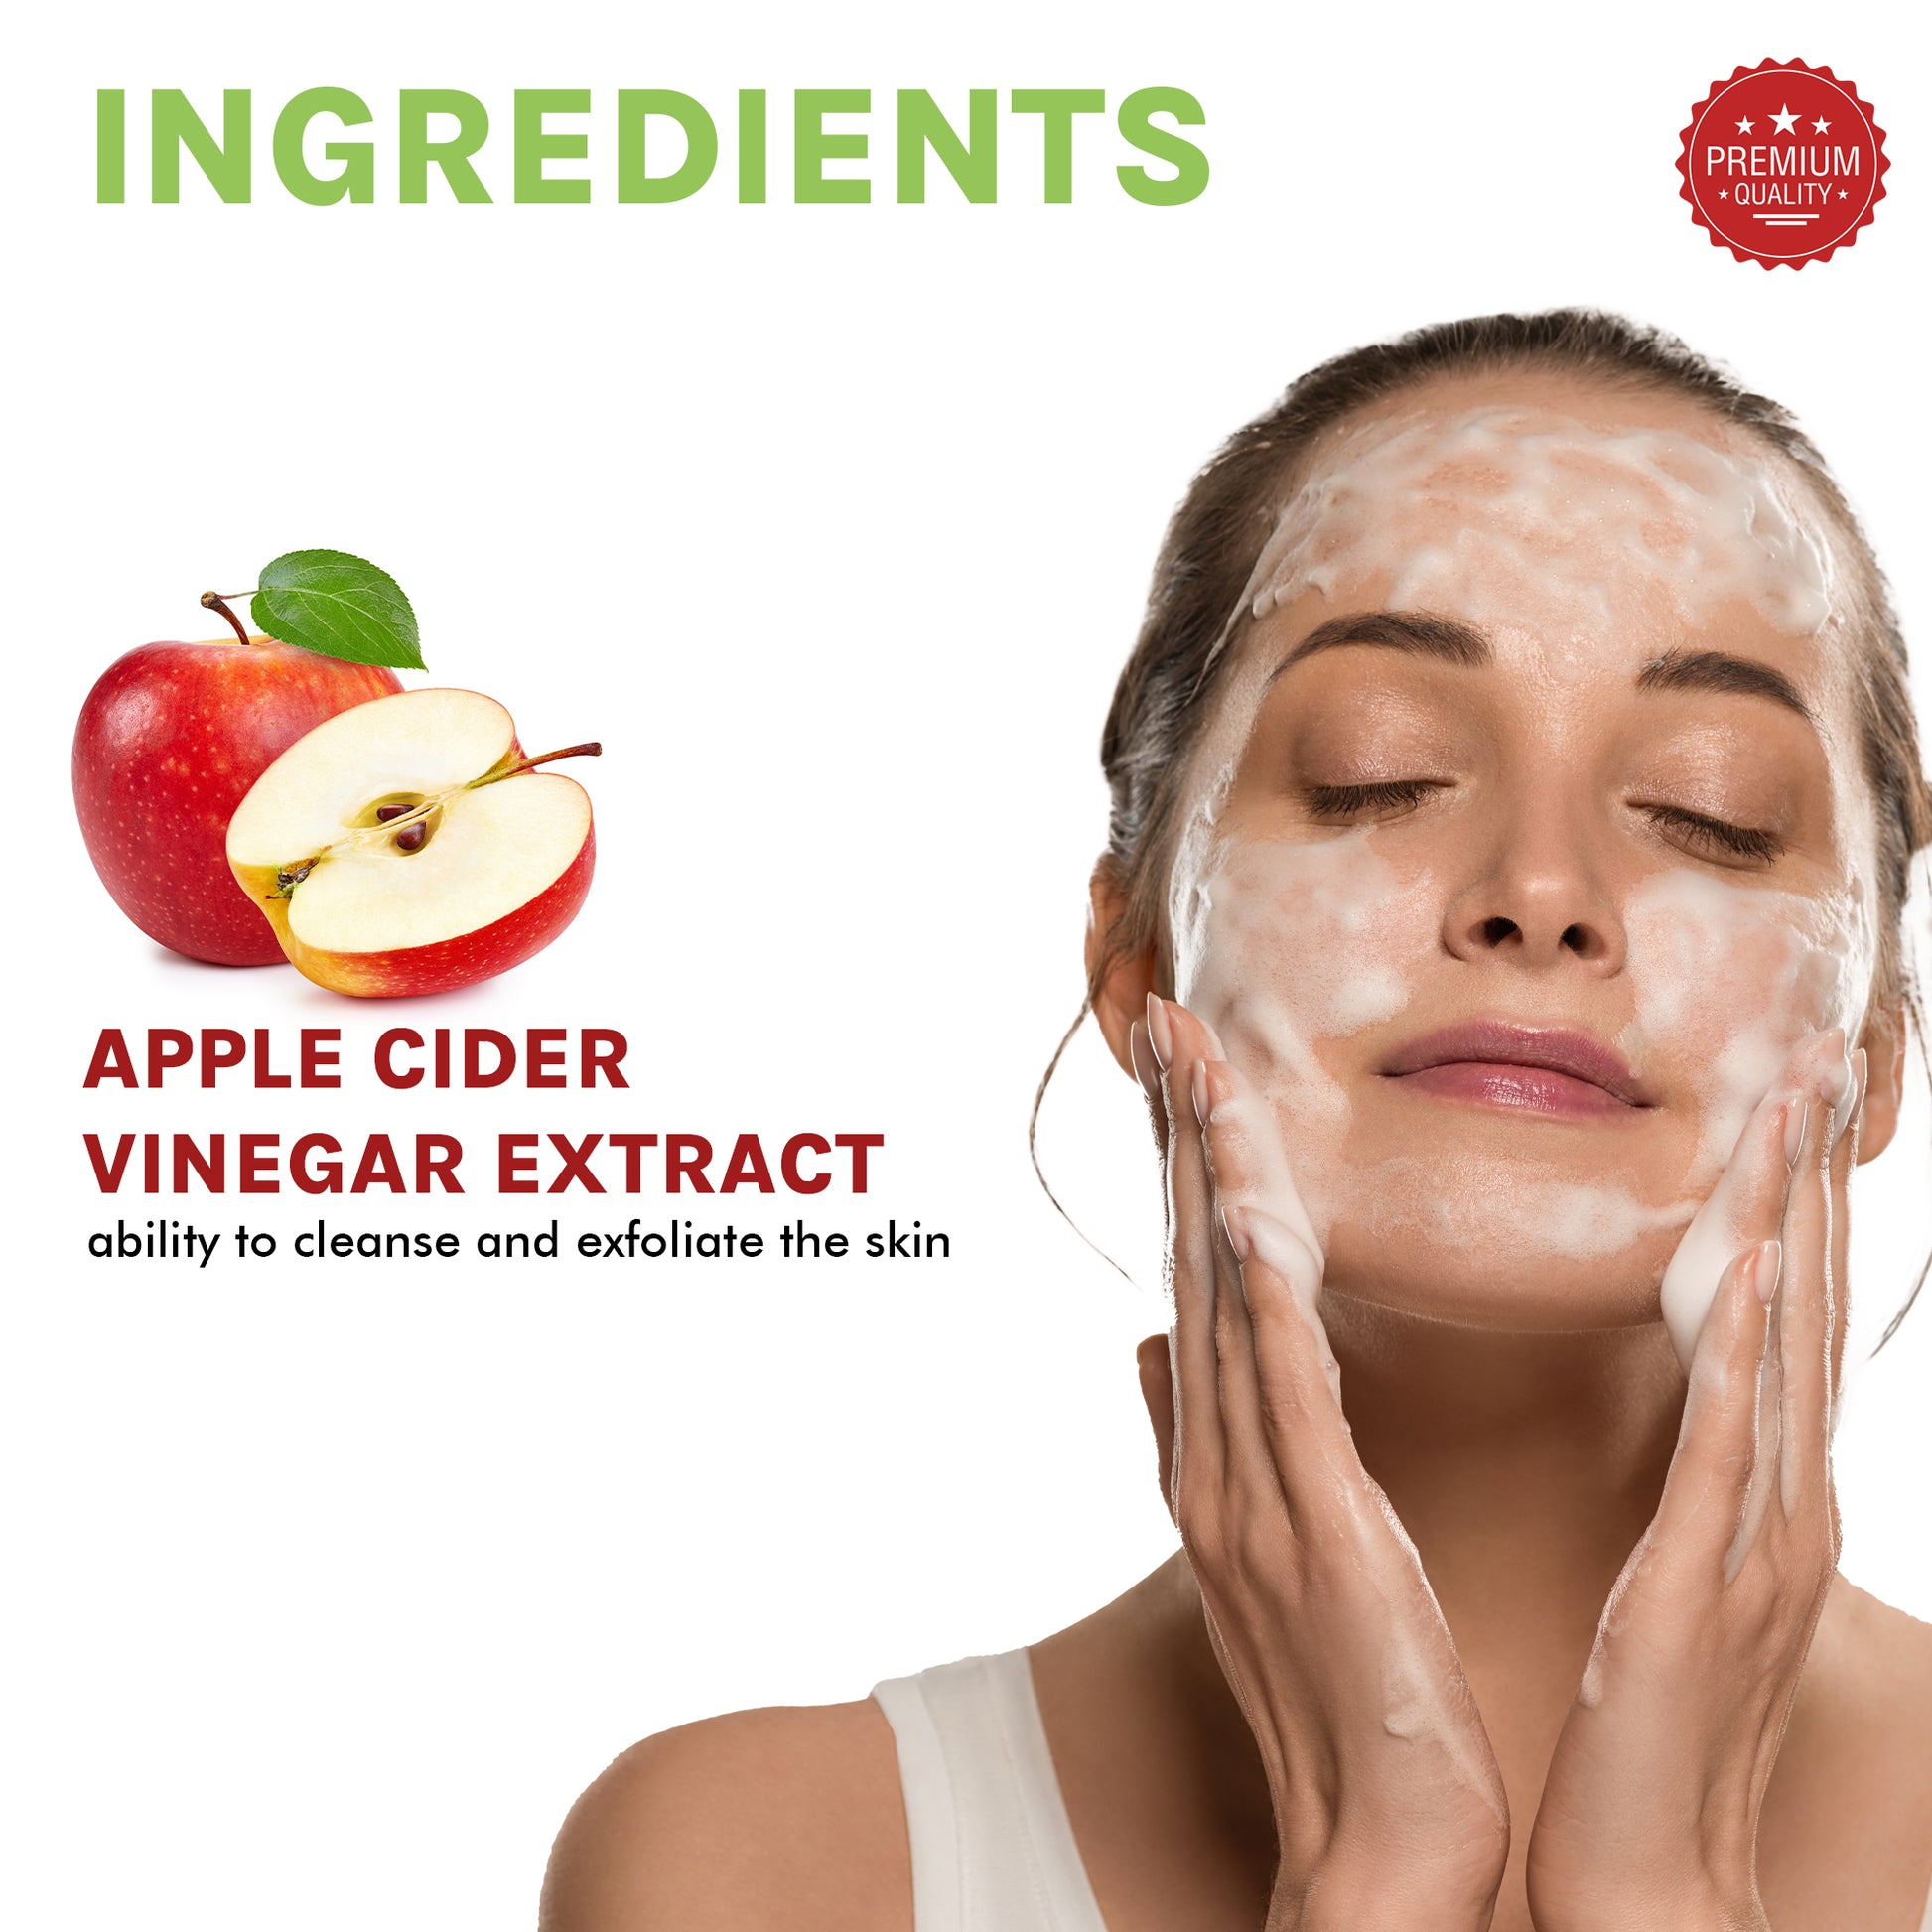 Benefits of Apple Cider Vinegar Foaming Face Wash